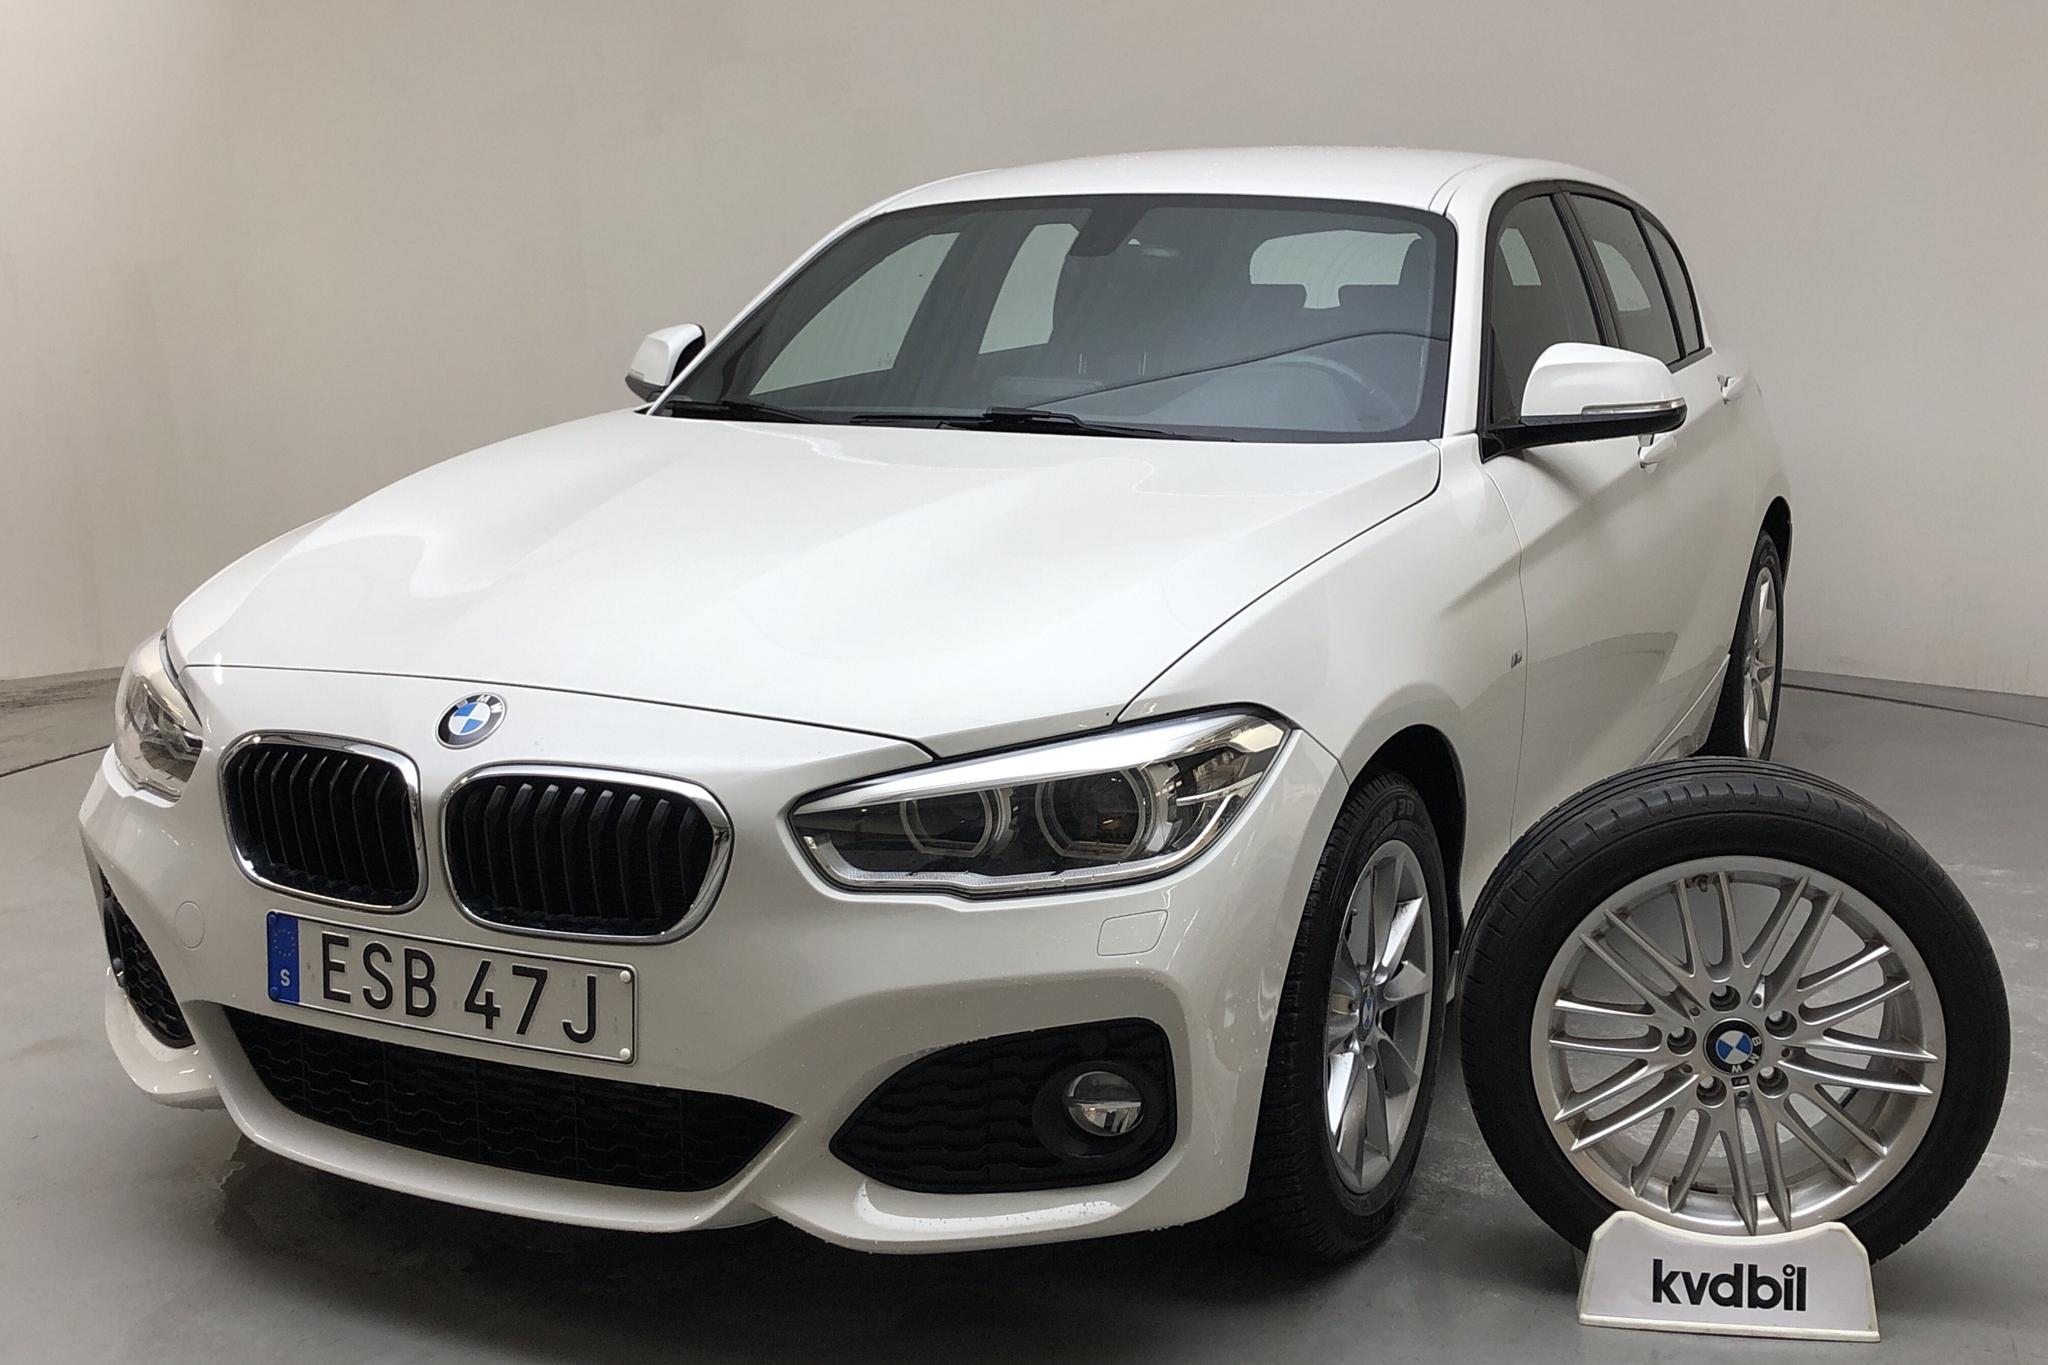 BMW 120d xDrive 5dr, F20 (190hk) - 72 440 km - Automatic - white - 2019